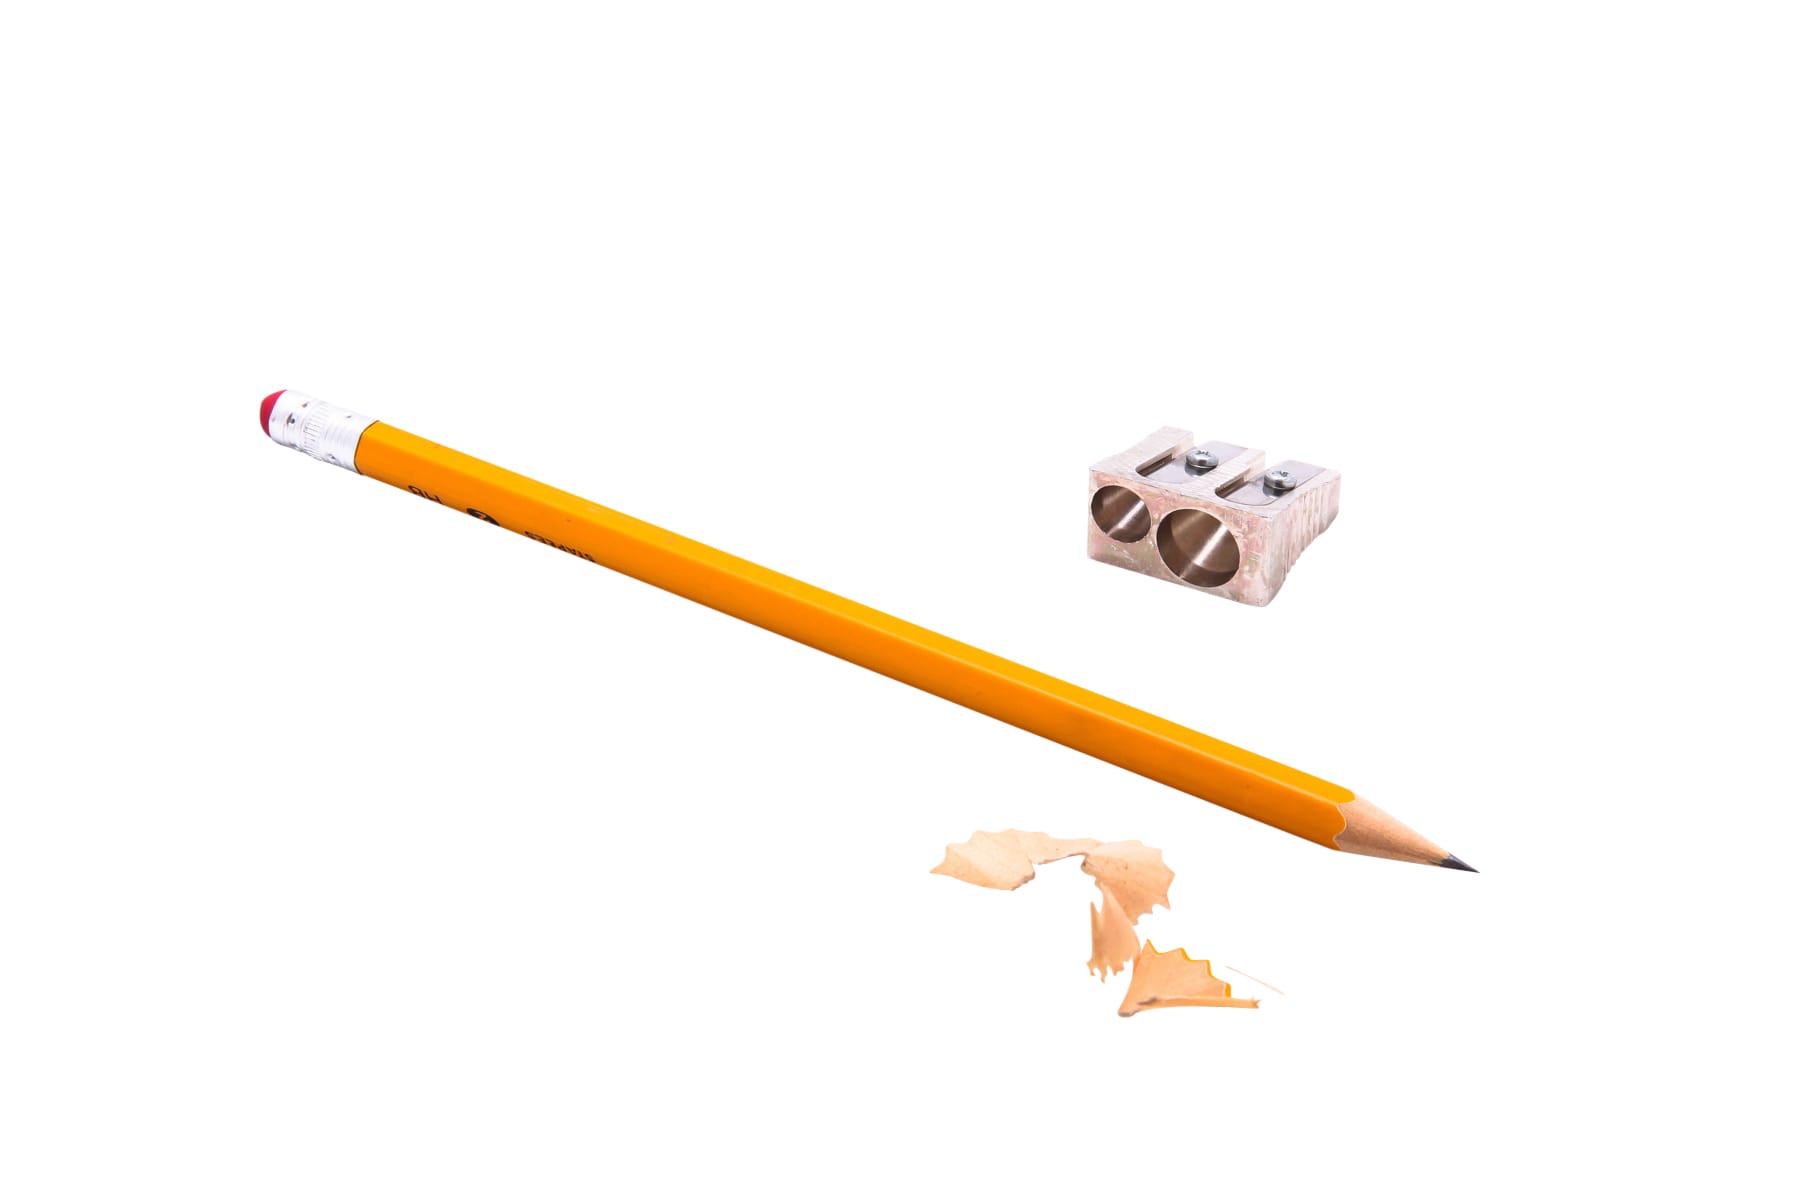 Baumgartens Pencil Sharpener Dual Hole SILVER (MR-2110)